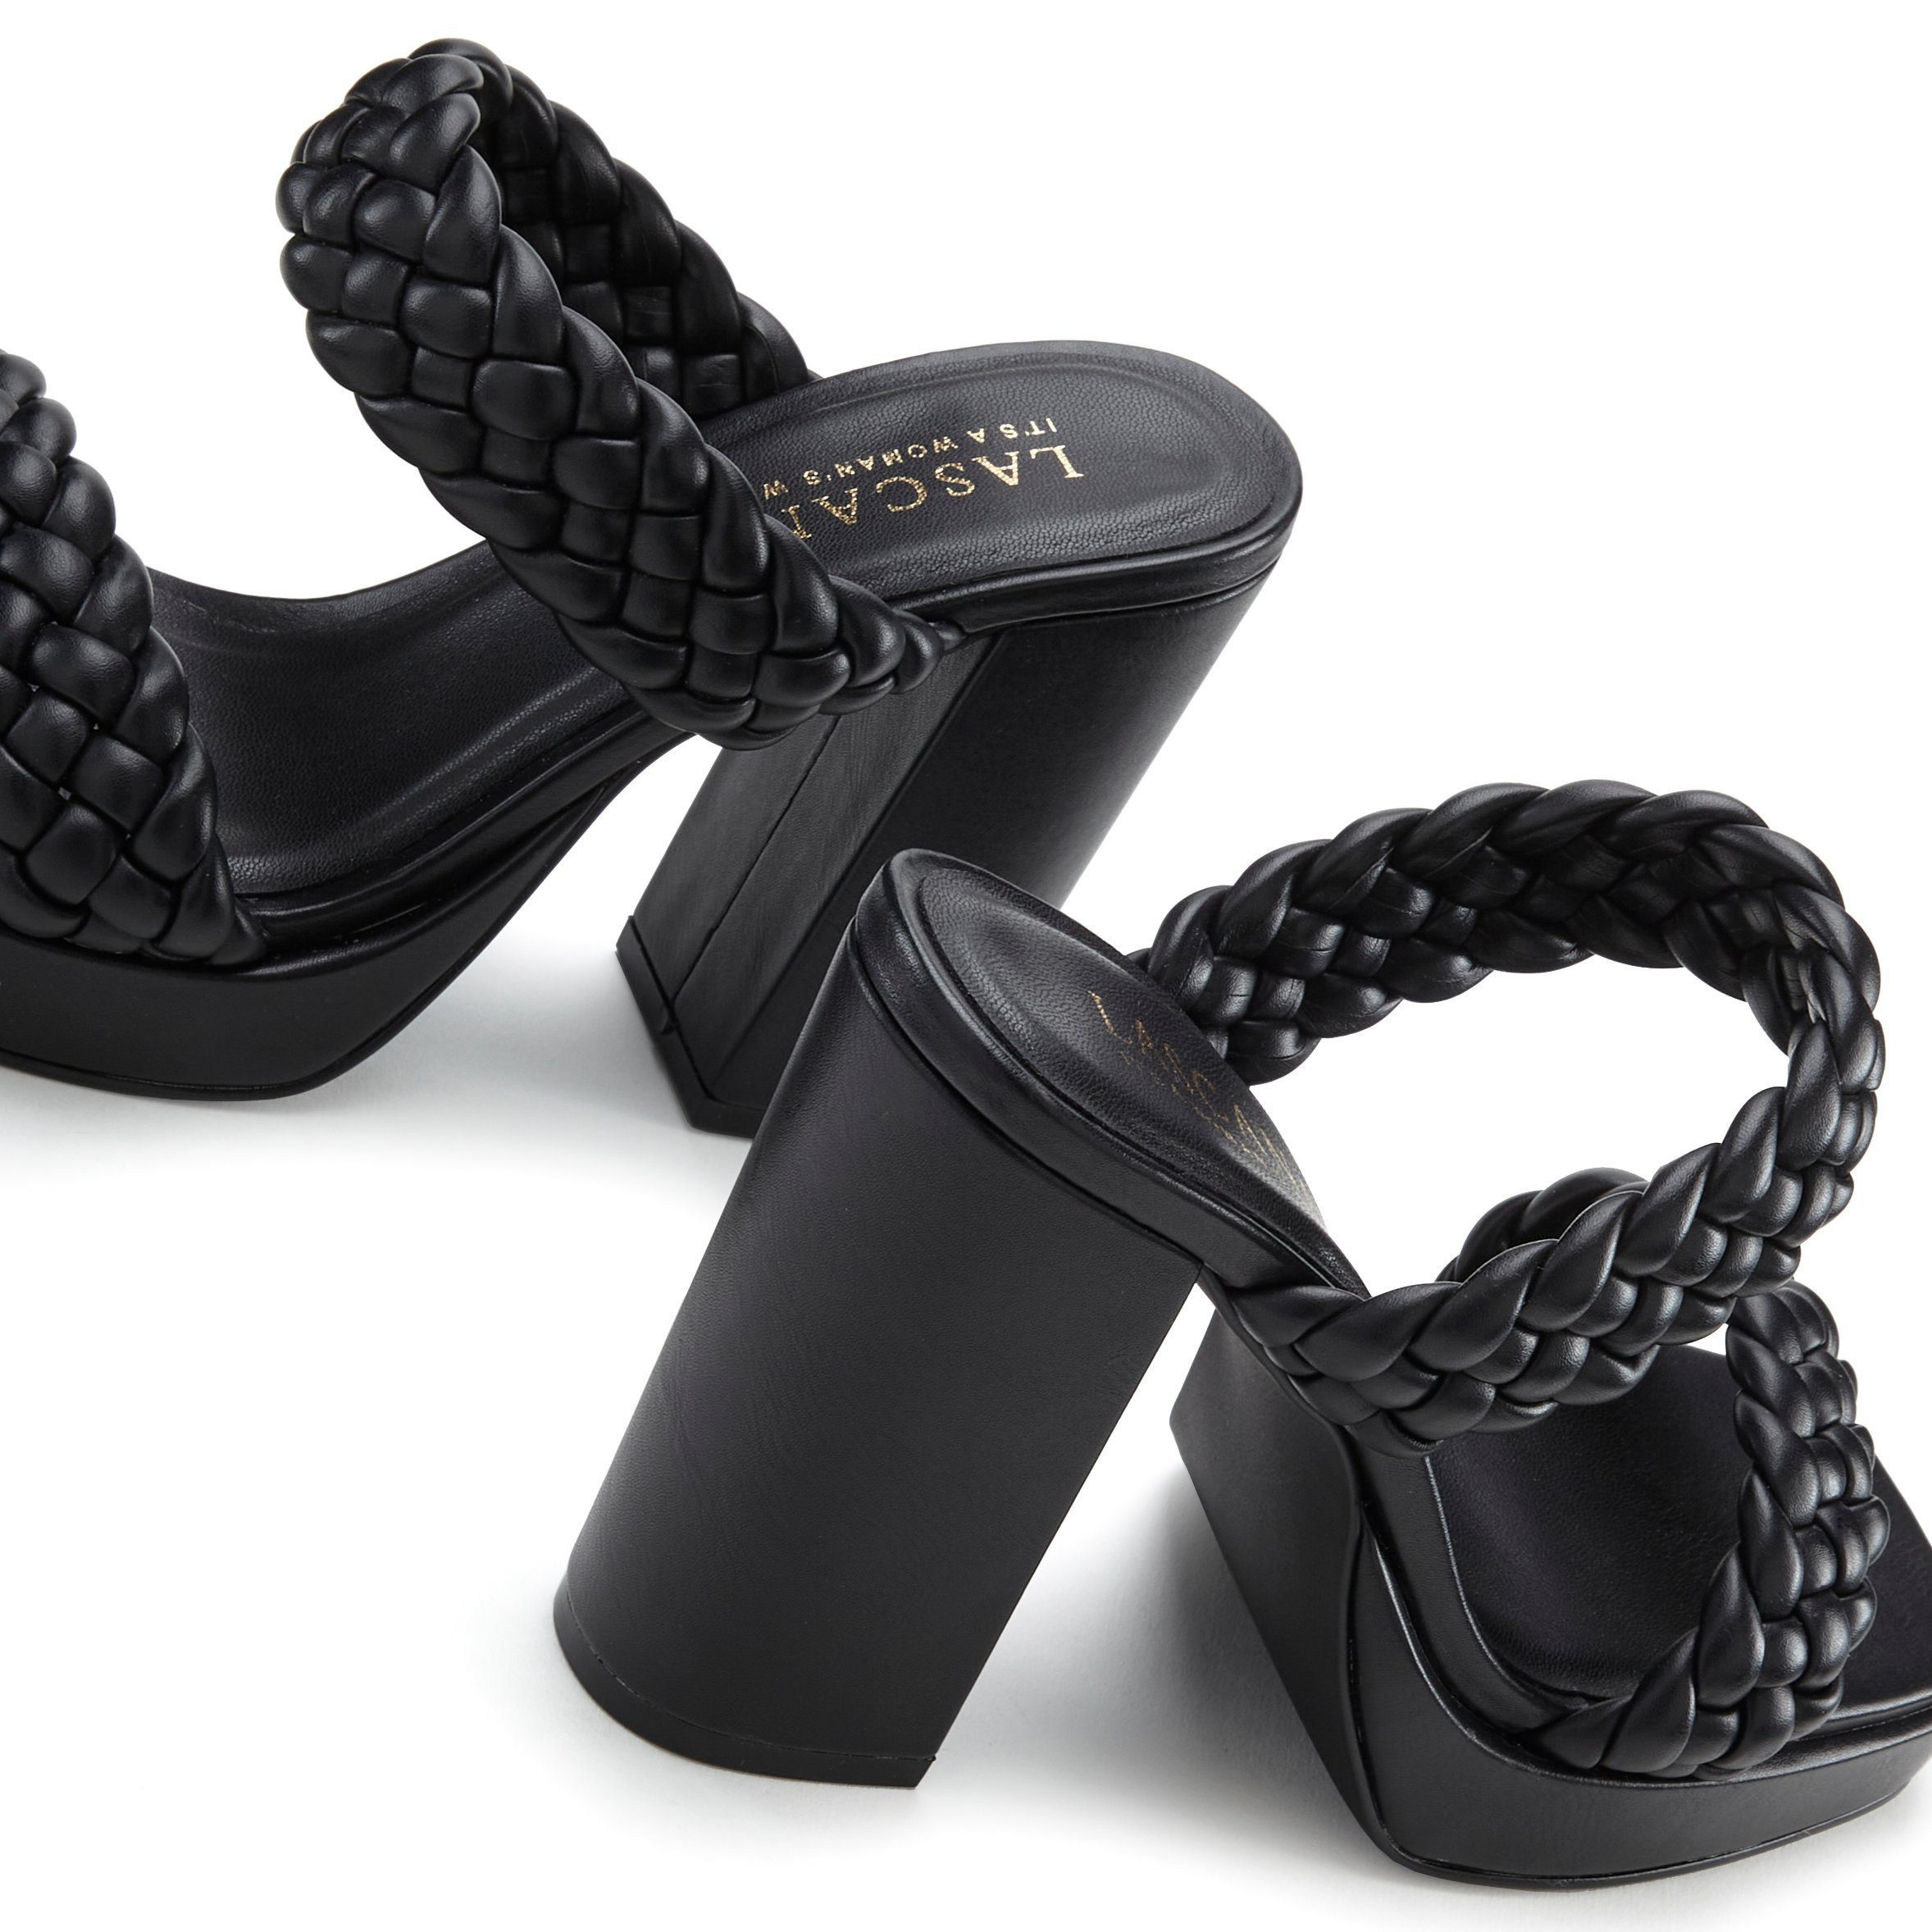 Pantolette schwarz LASCANA Riemchen Flecht-Design raffinierte Sandale, offener im Schuh, Mule,